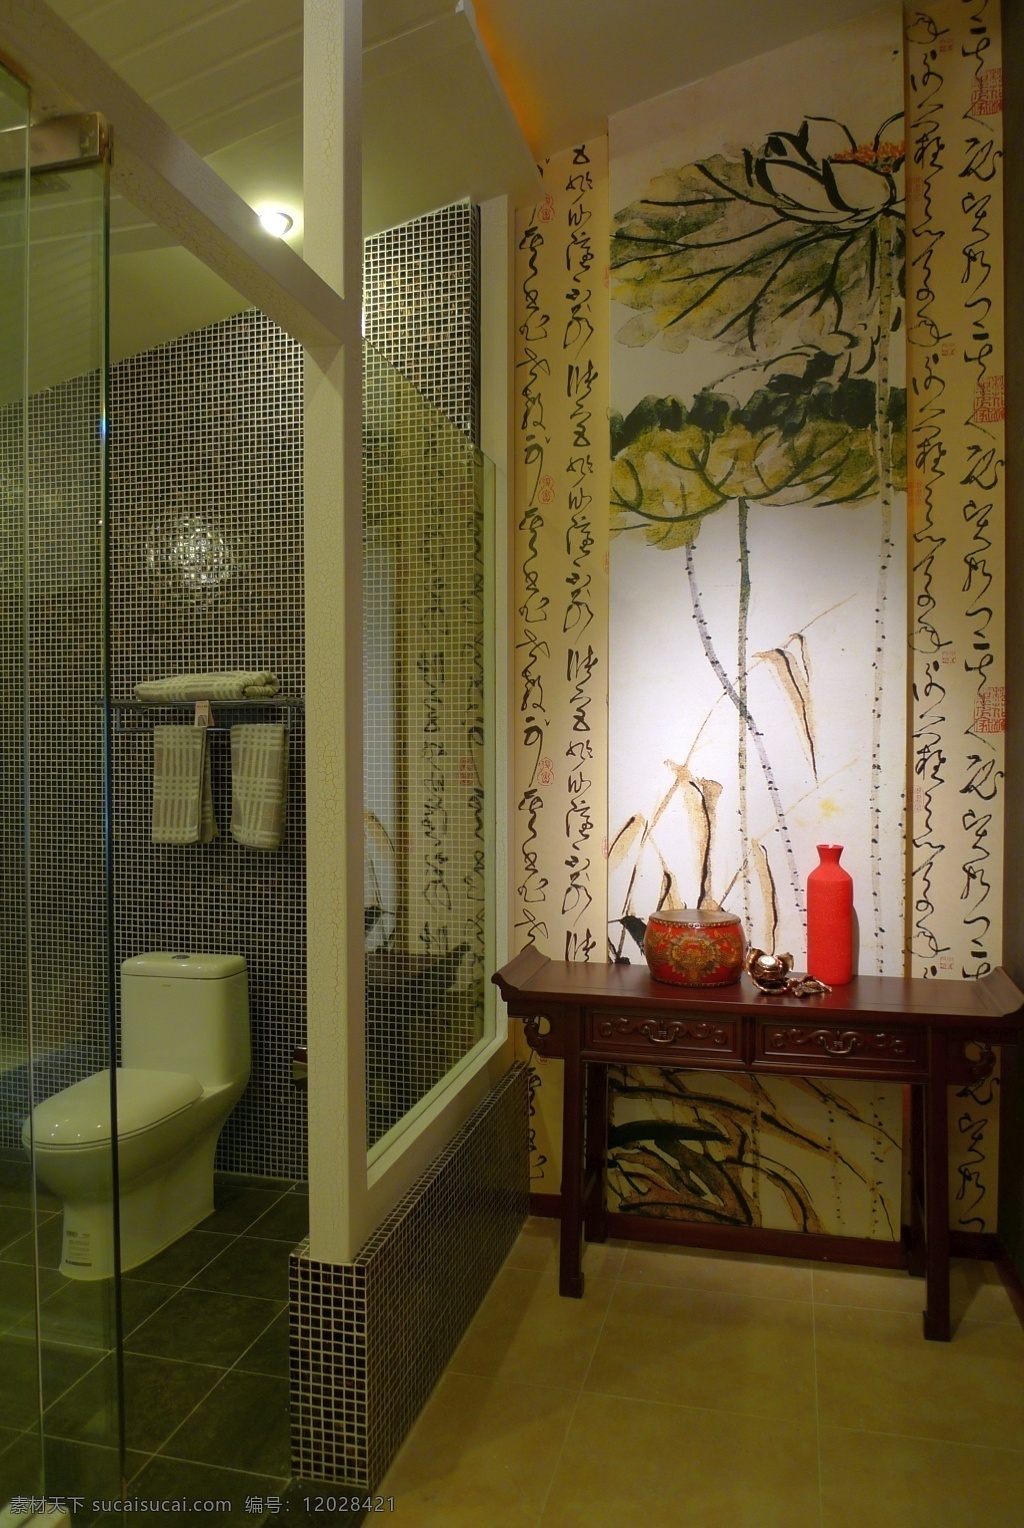 别墅 室内 浴室 回廊 装修 效果图 浴室回廊 精美花水字画 红色瓷器 透明玻璃门